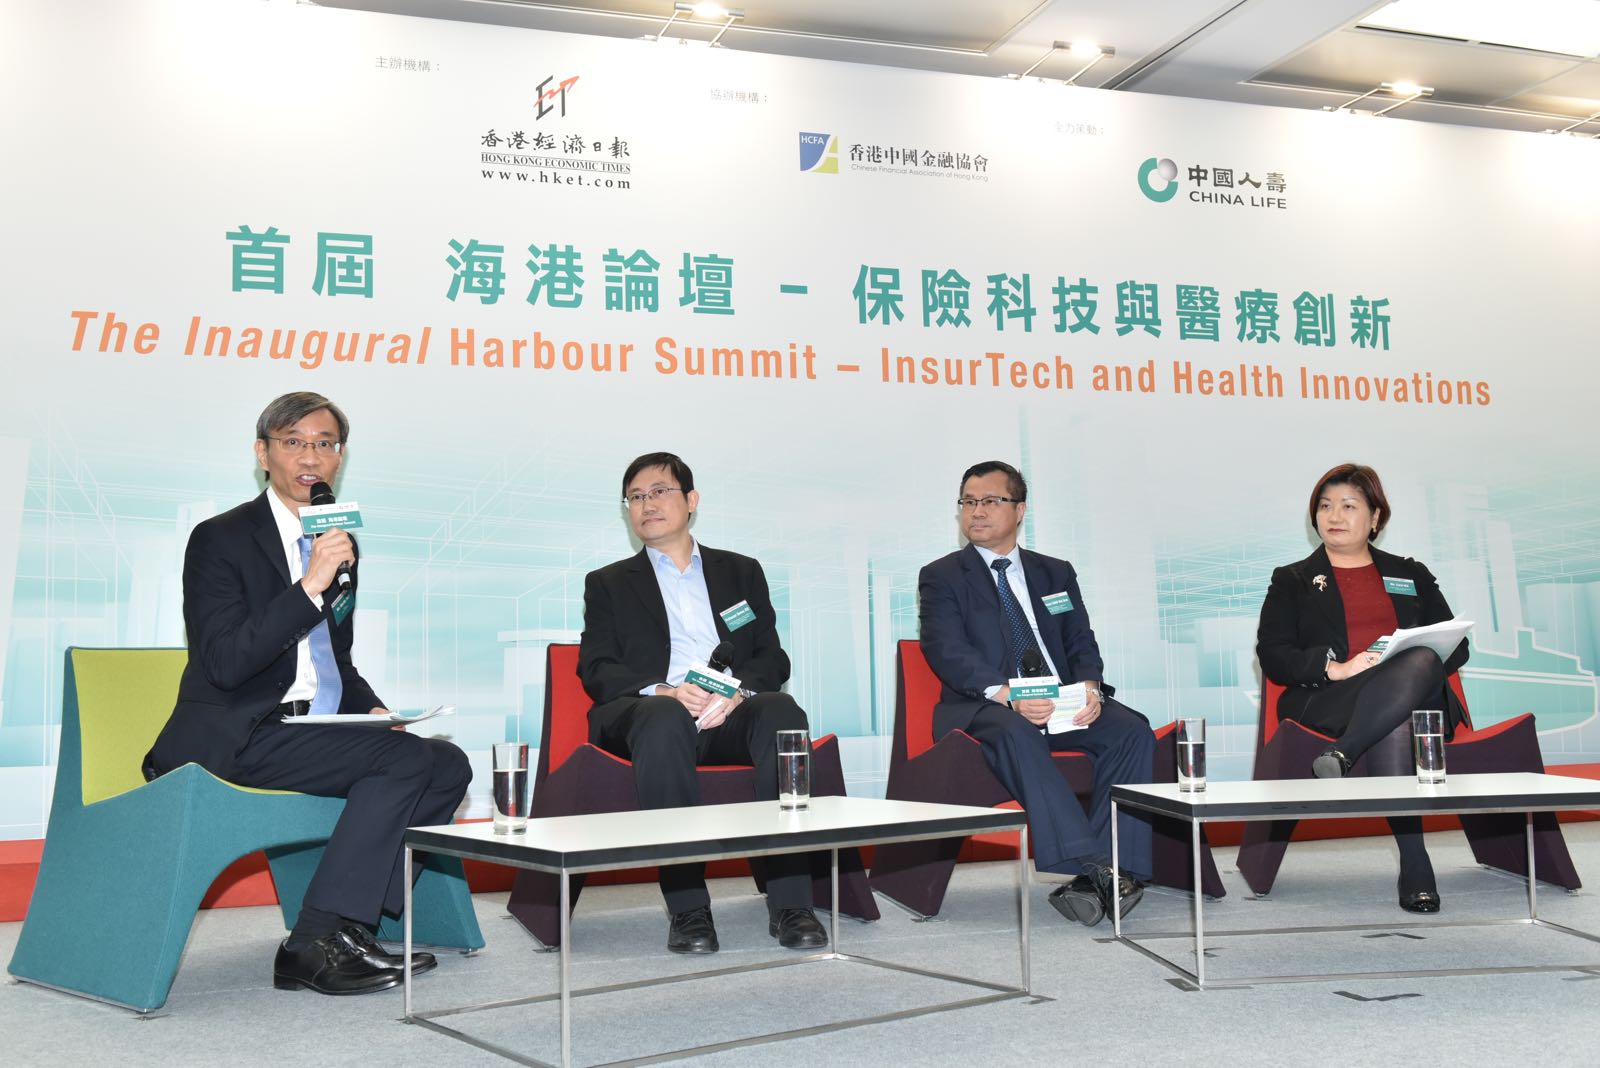 「首屆 海港論壇-保險科技與醫療創新」成功舉辦，探討保險科技及醫療創新